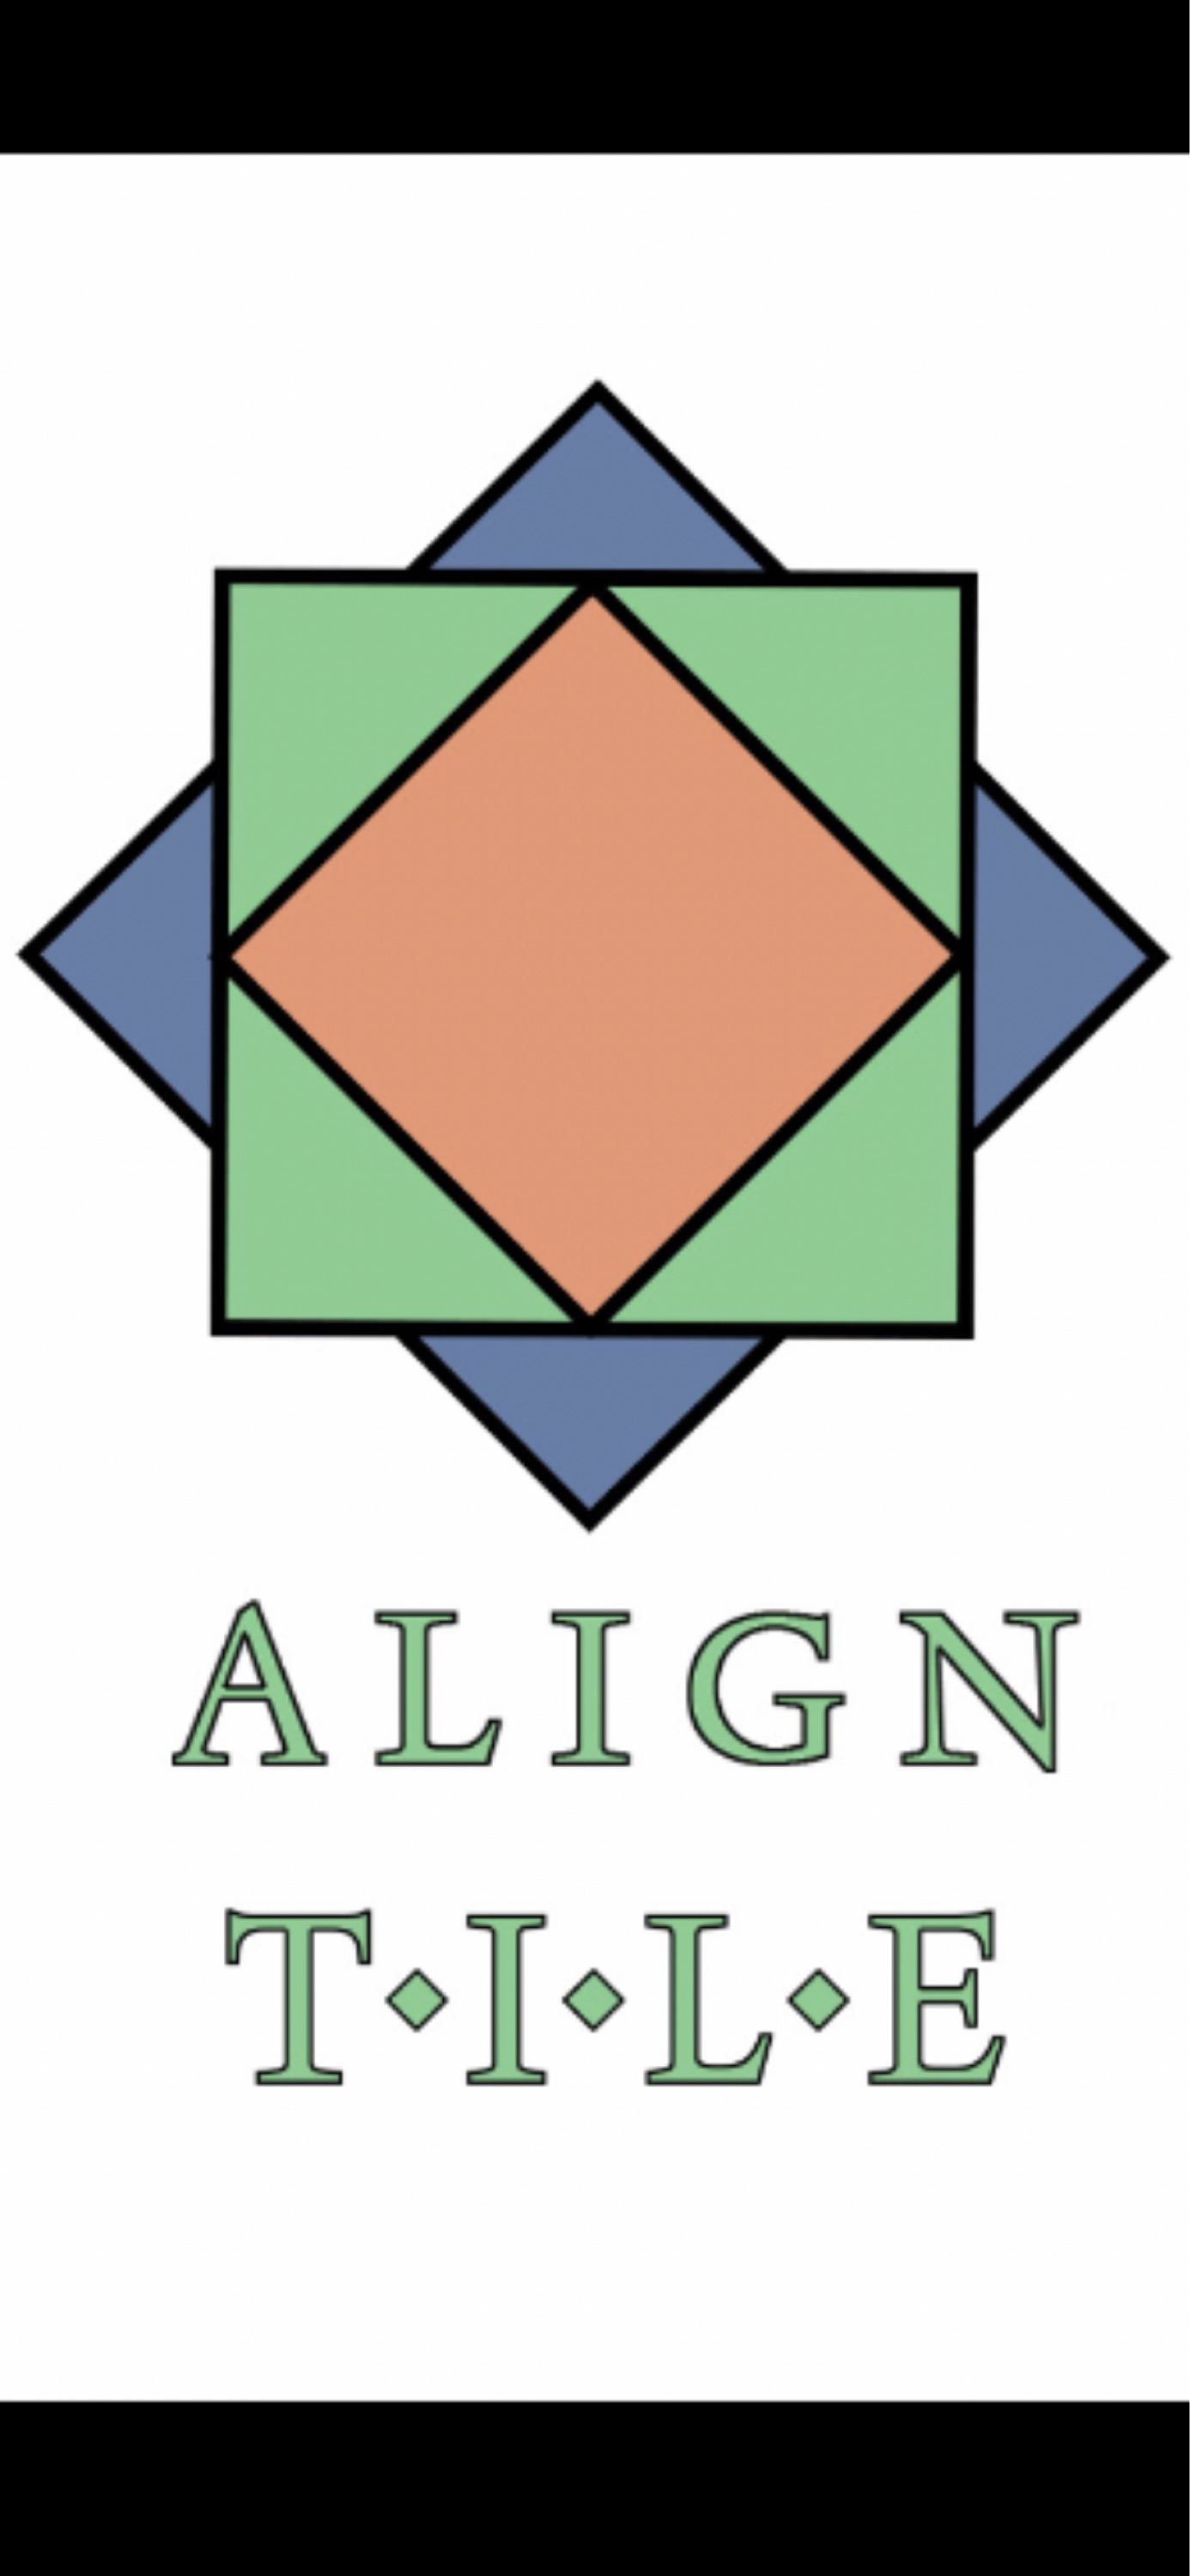 Align Tile Logo